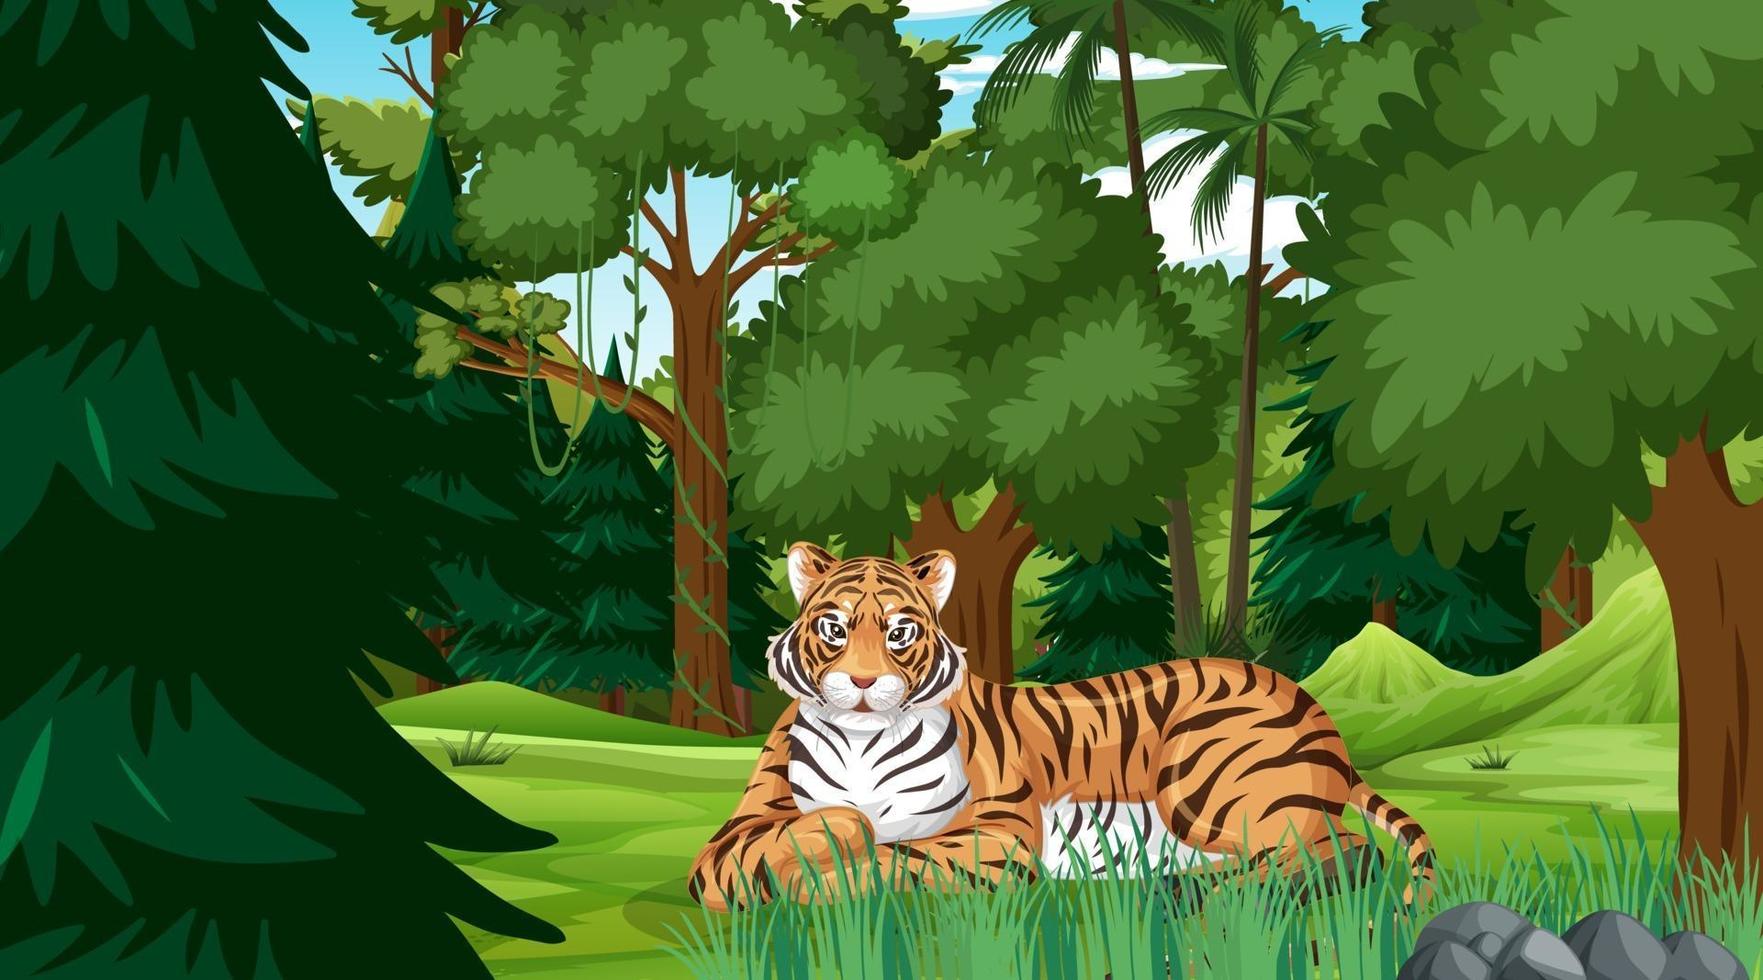 ein Tiger in der Wald- oder Regenwaldszene mit vielen Bäumen vektor